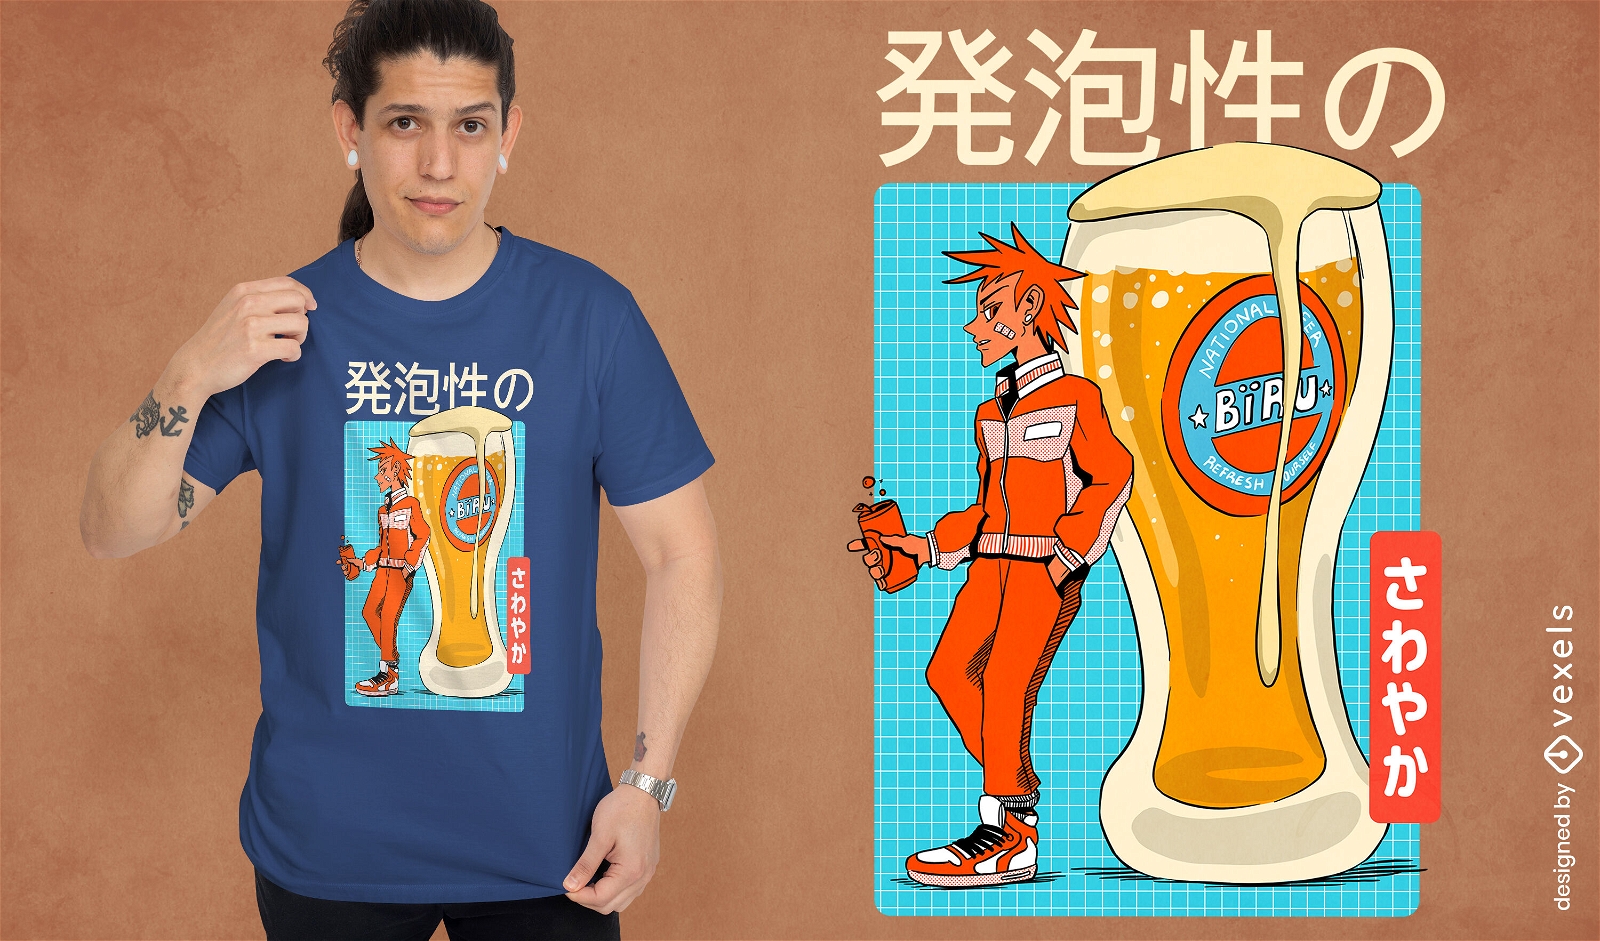 Diseño de camiseta de cerveza anime.